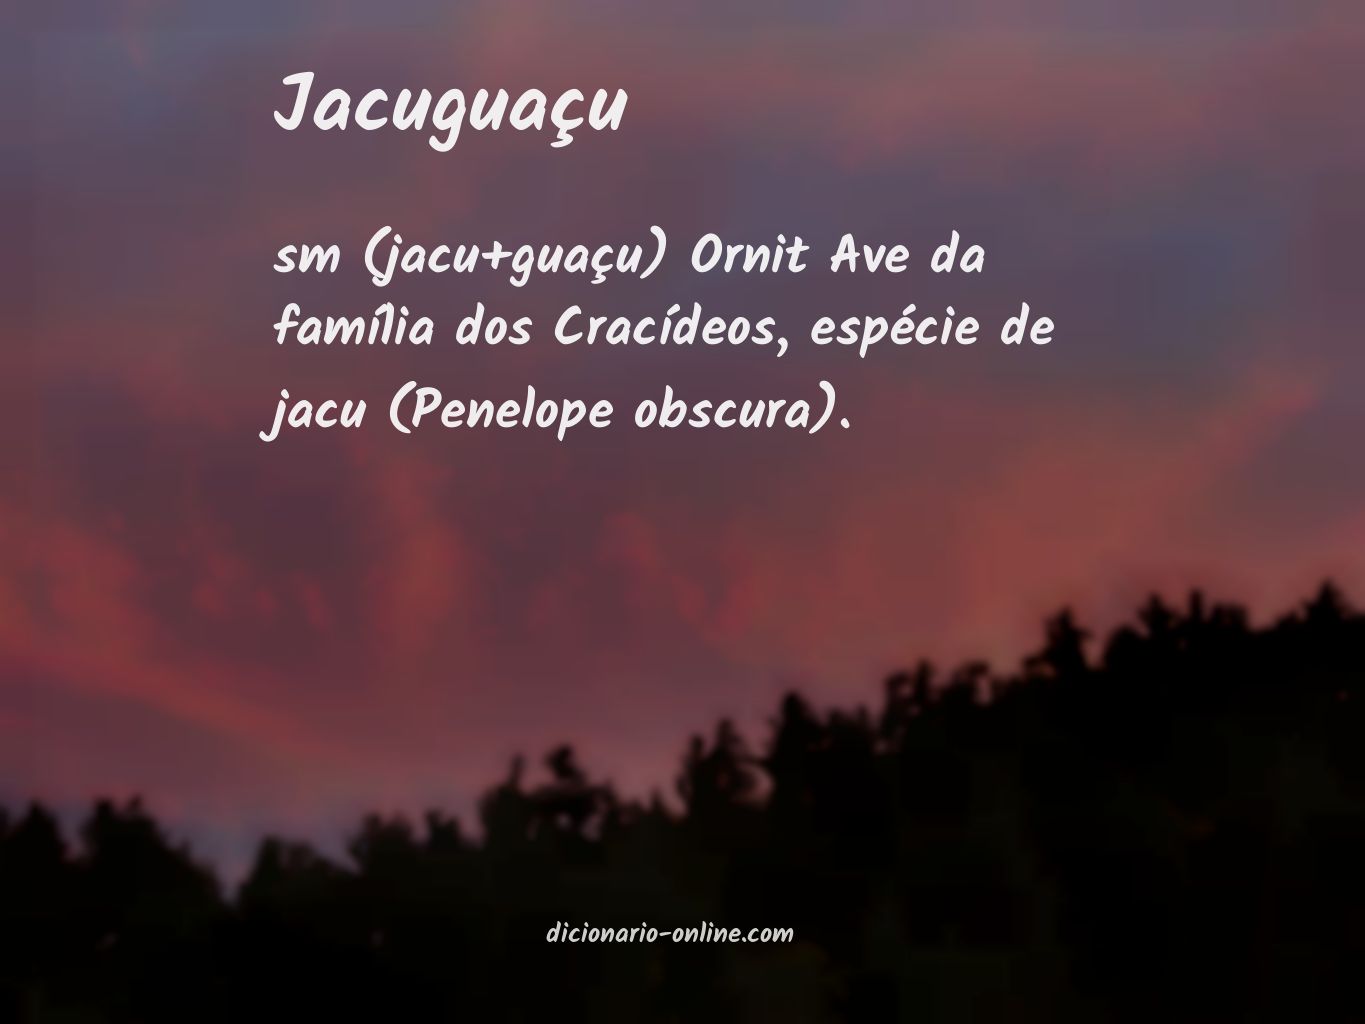 Significado de jacuguaçu